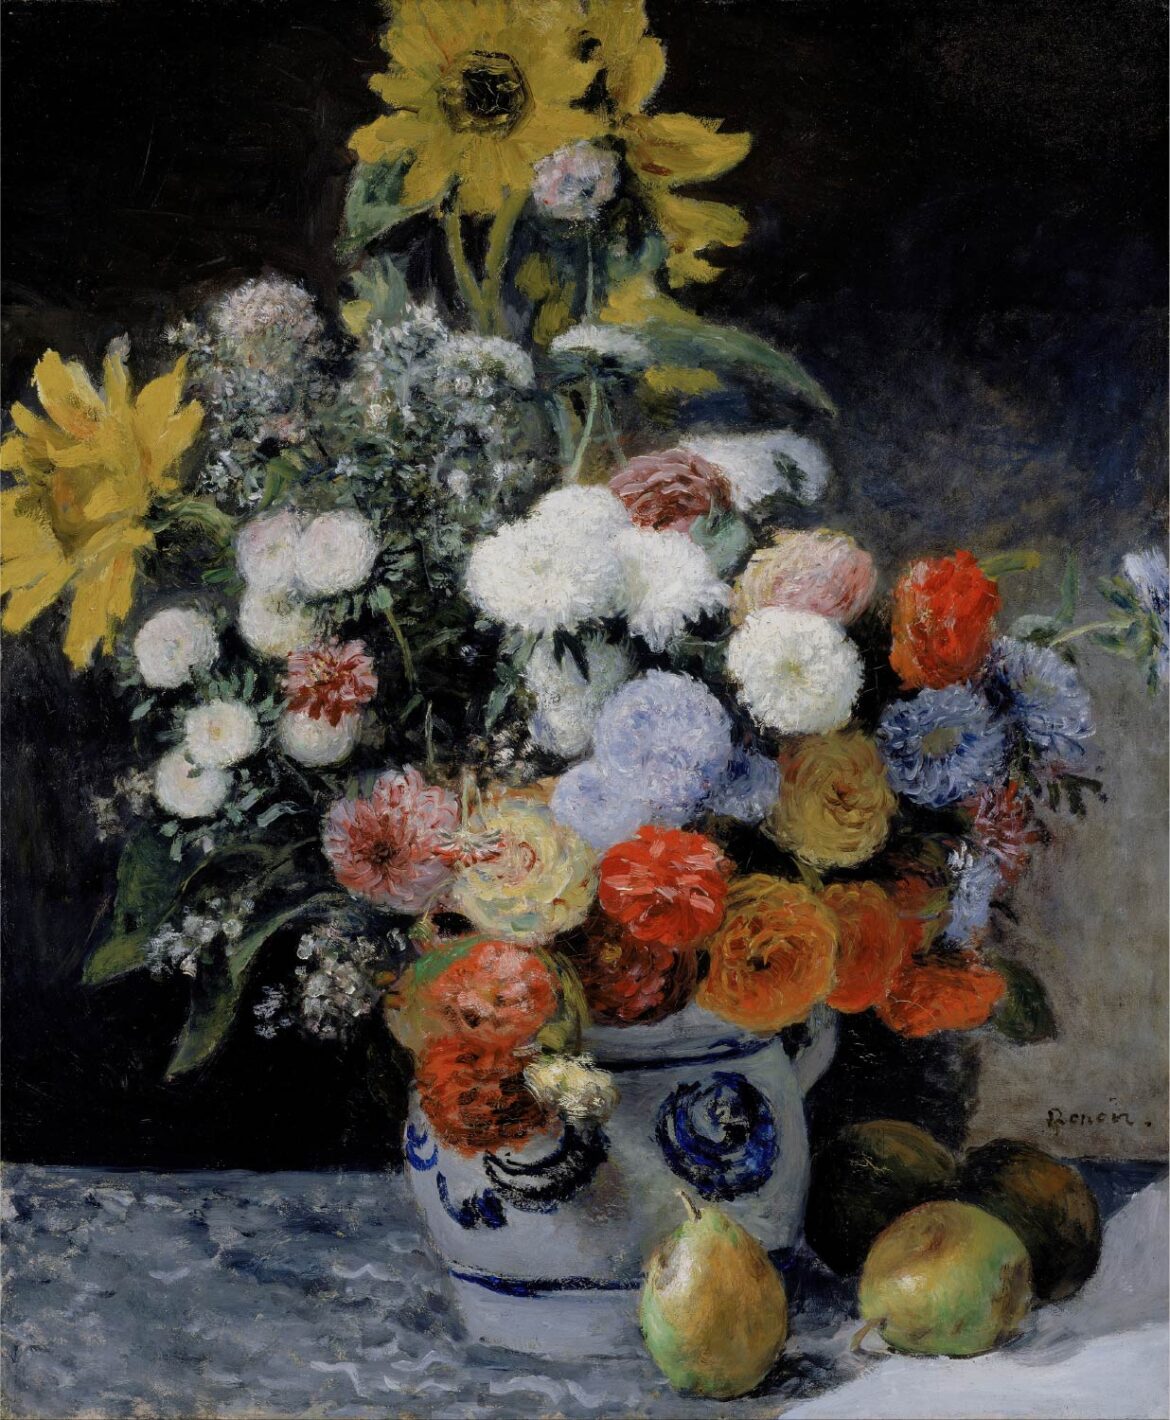 【無料壁紙】ピエール＝オーギュスト・ルノワール「陶器の花瓶の花束 (1869頃)」 / Pierre Auguste Renoir_Mixed Flowers in an Earthenware Pot (about 1869)